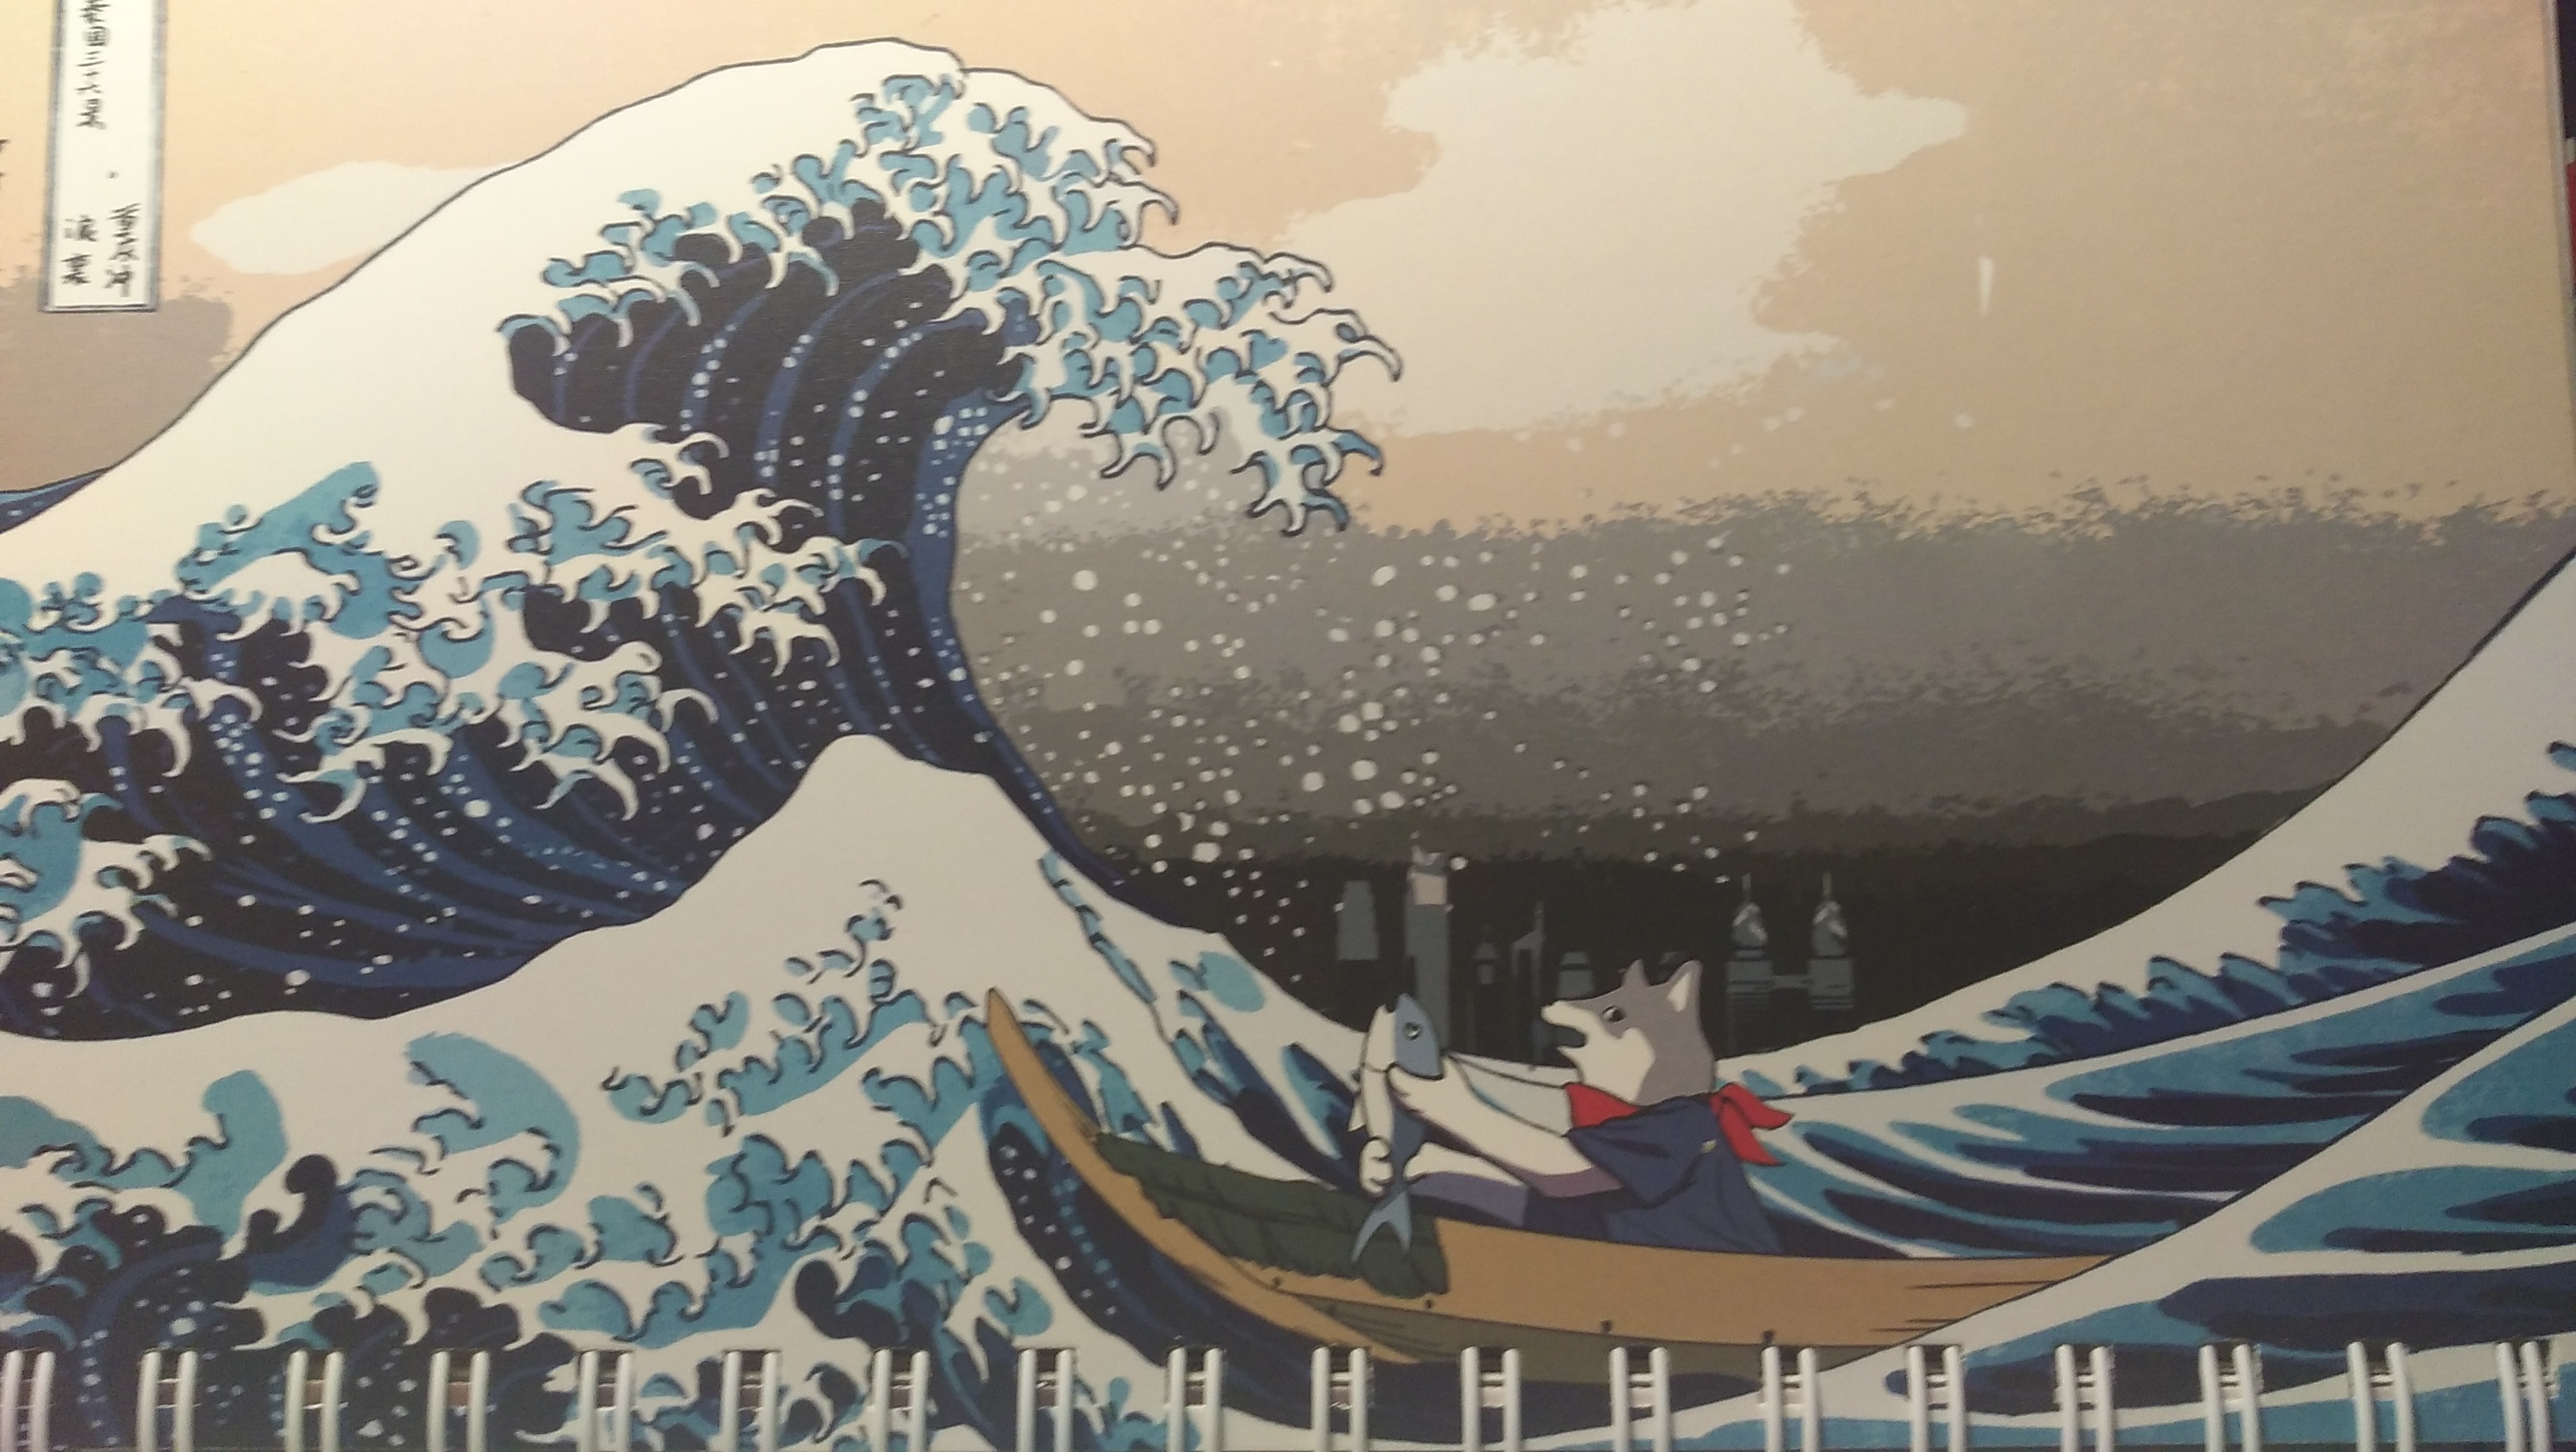 神奈川冲浪里壁纸4k图片